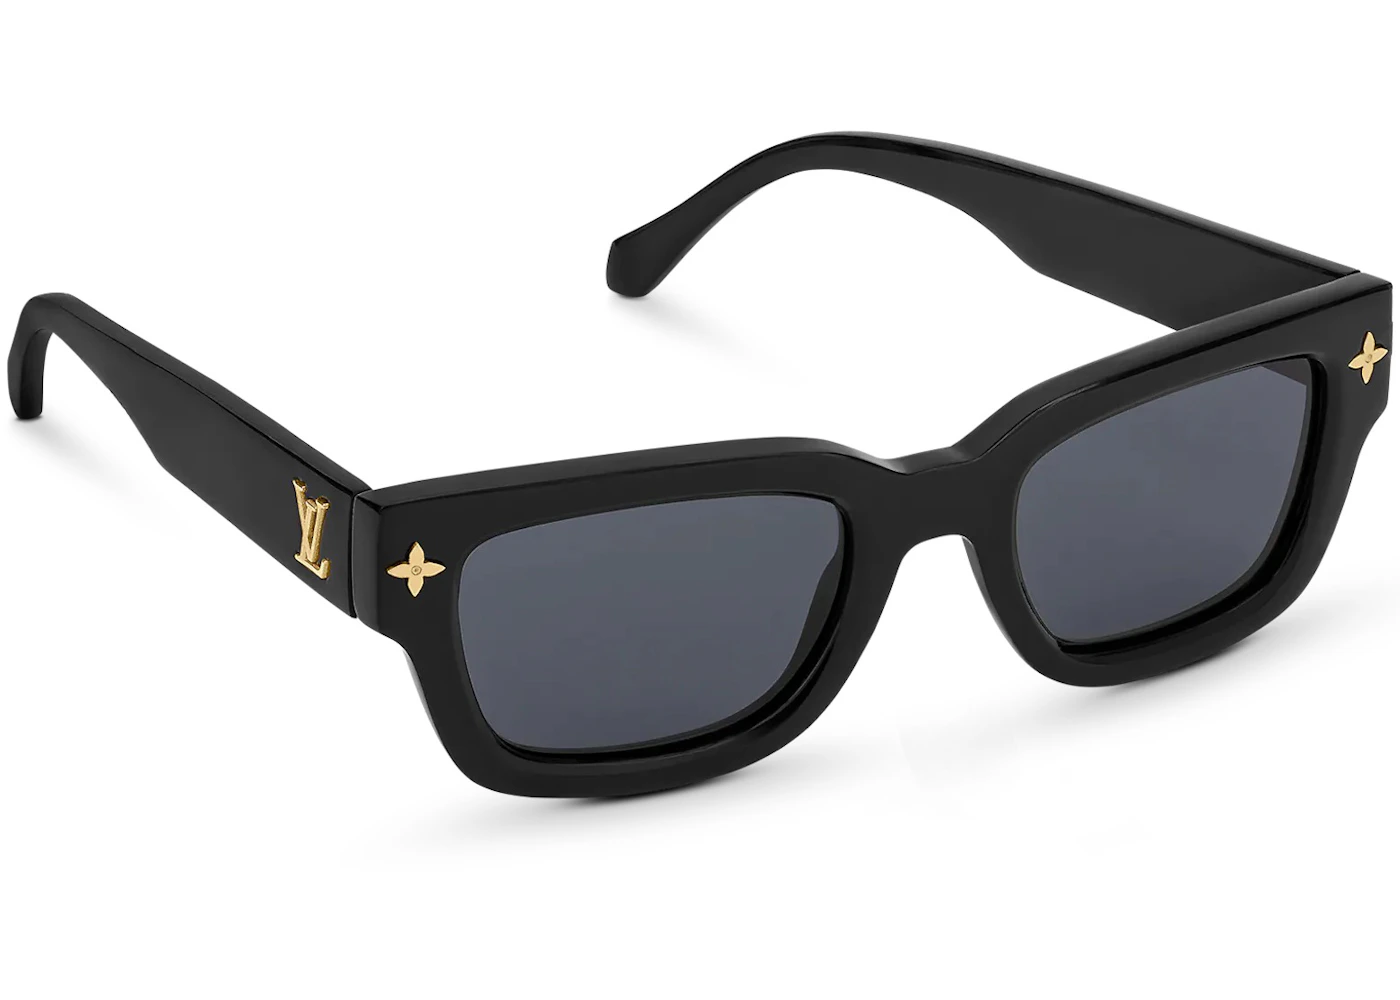 Louis vuitton sunglasses, black - Gem